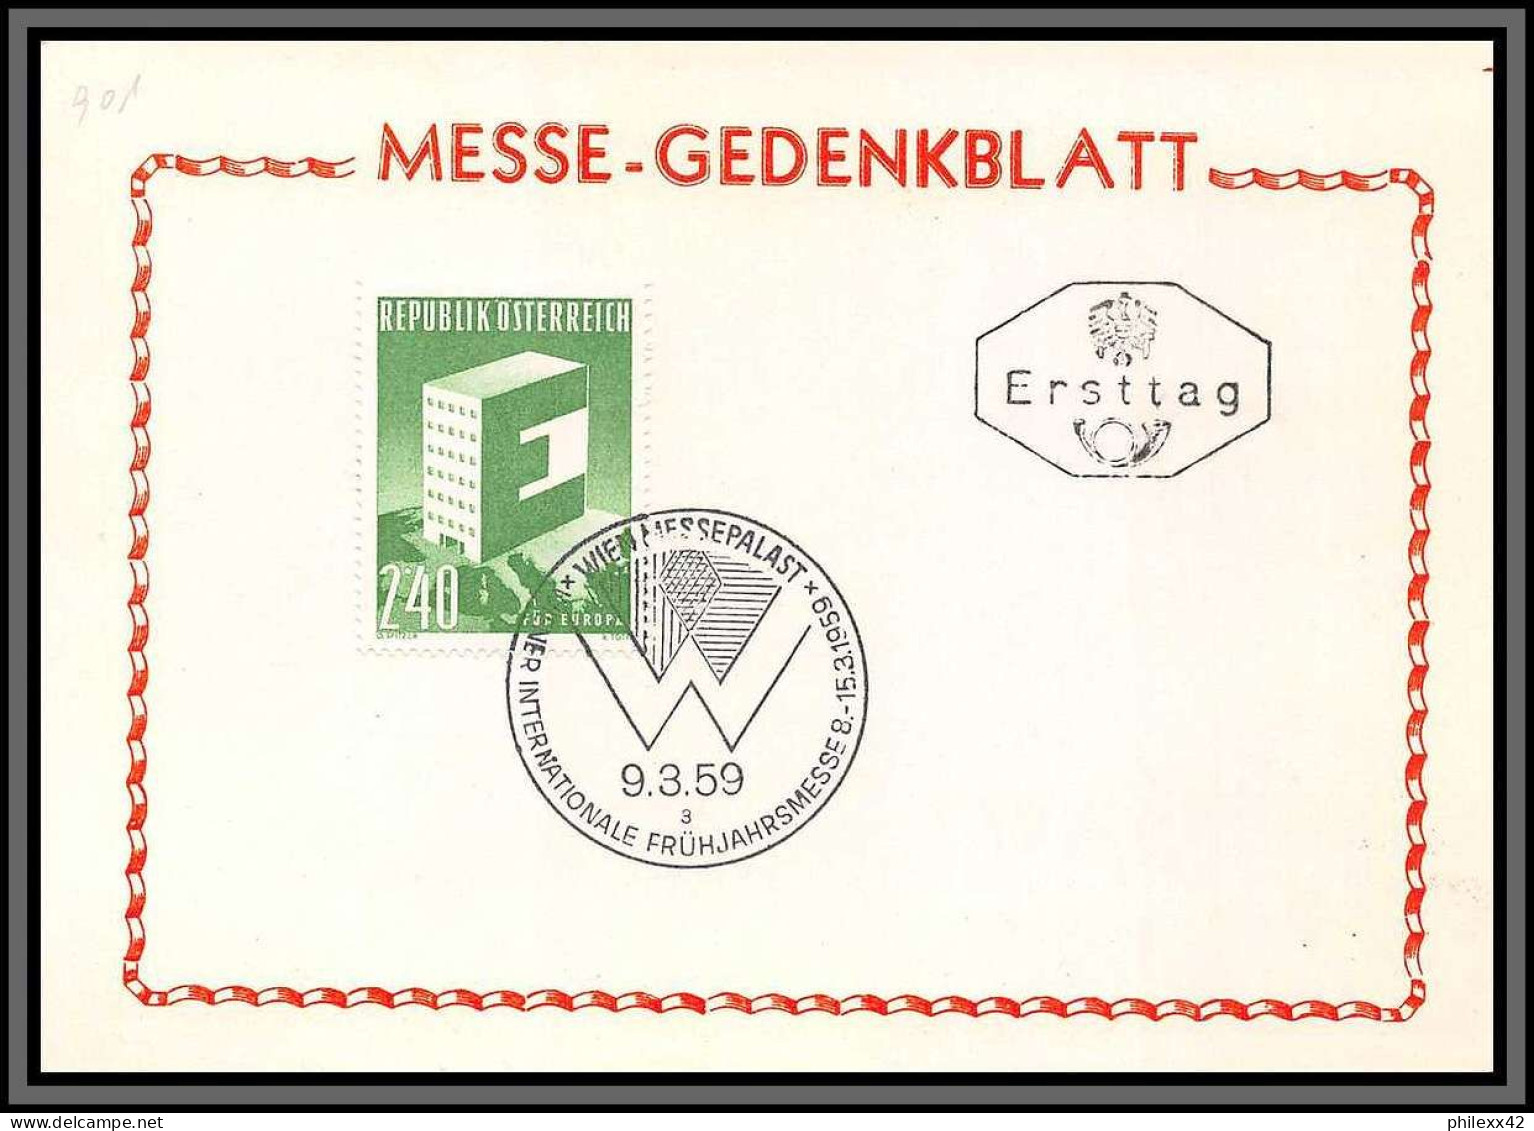 11806 N°901 Europa 3/9/1959 FDC Carte Postcard Messe Gedenkblatt Autriche Osterreich Austria  - FDC